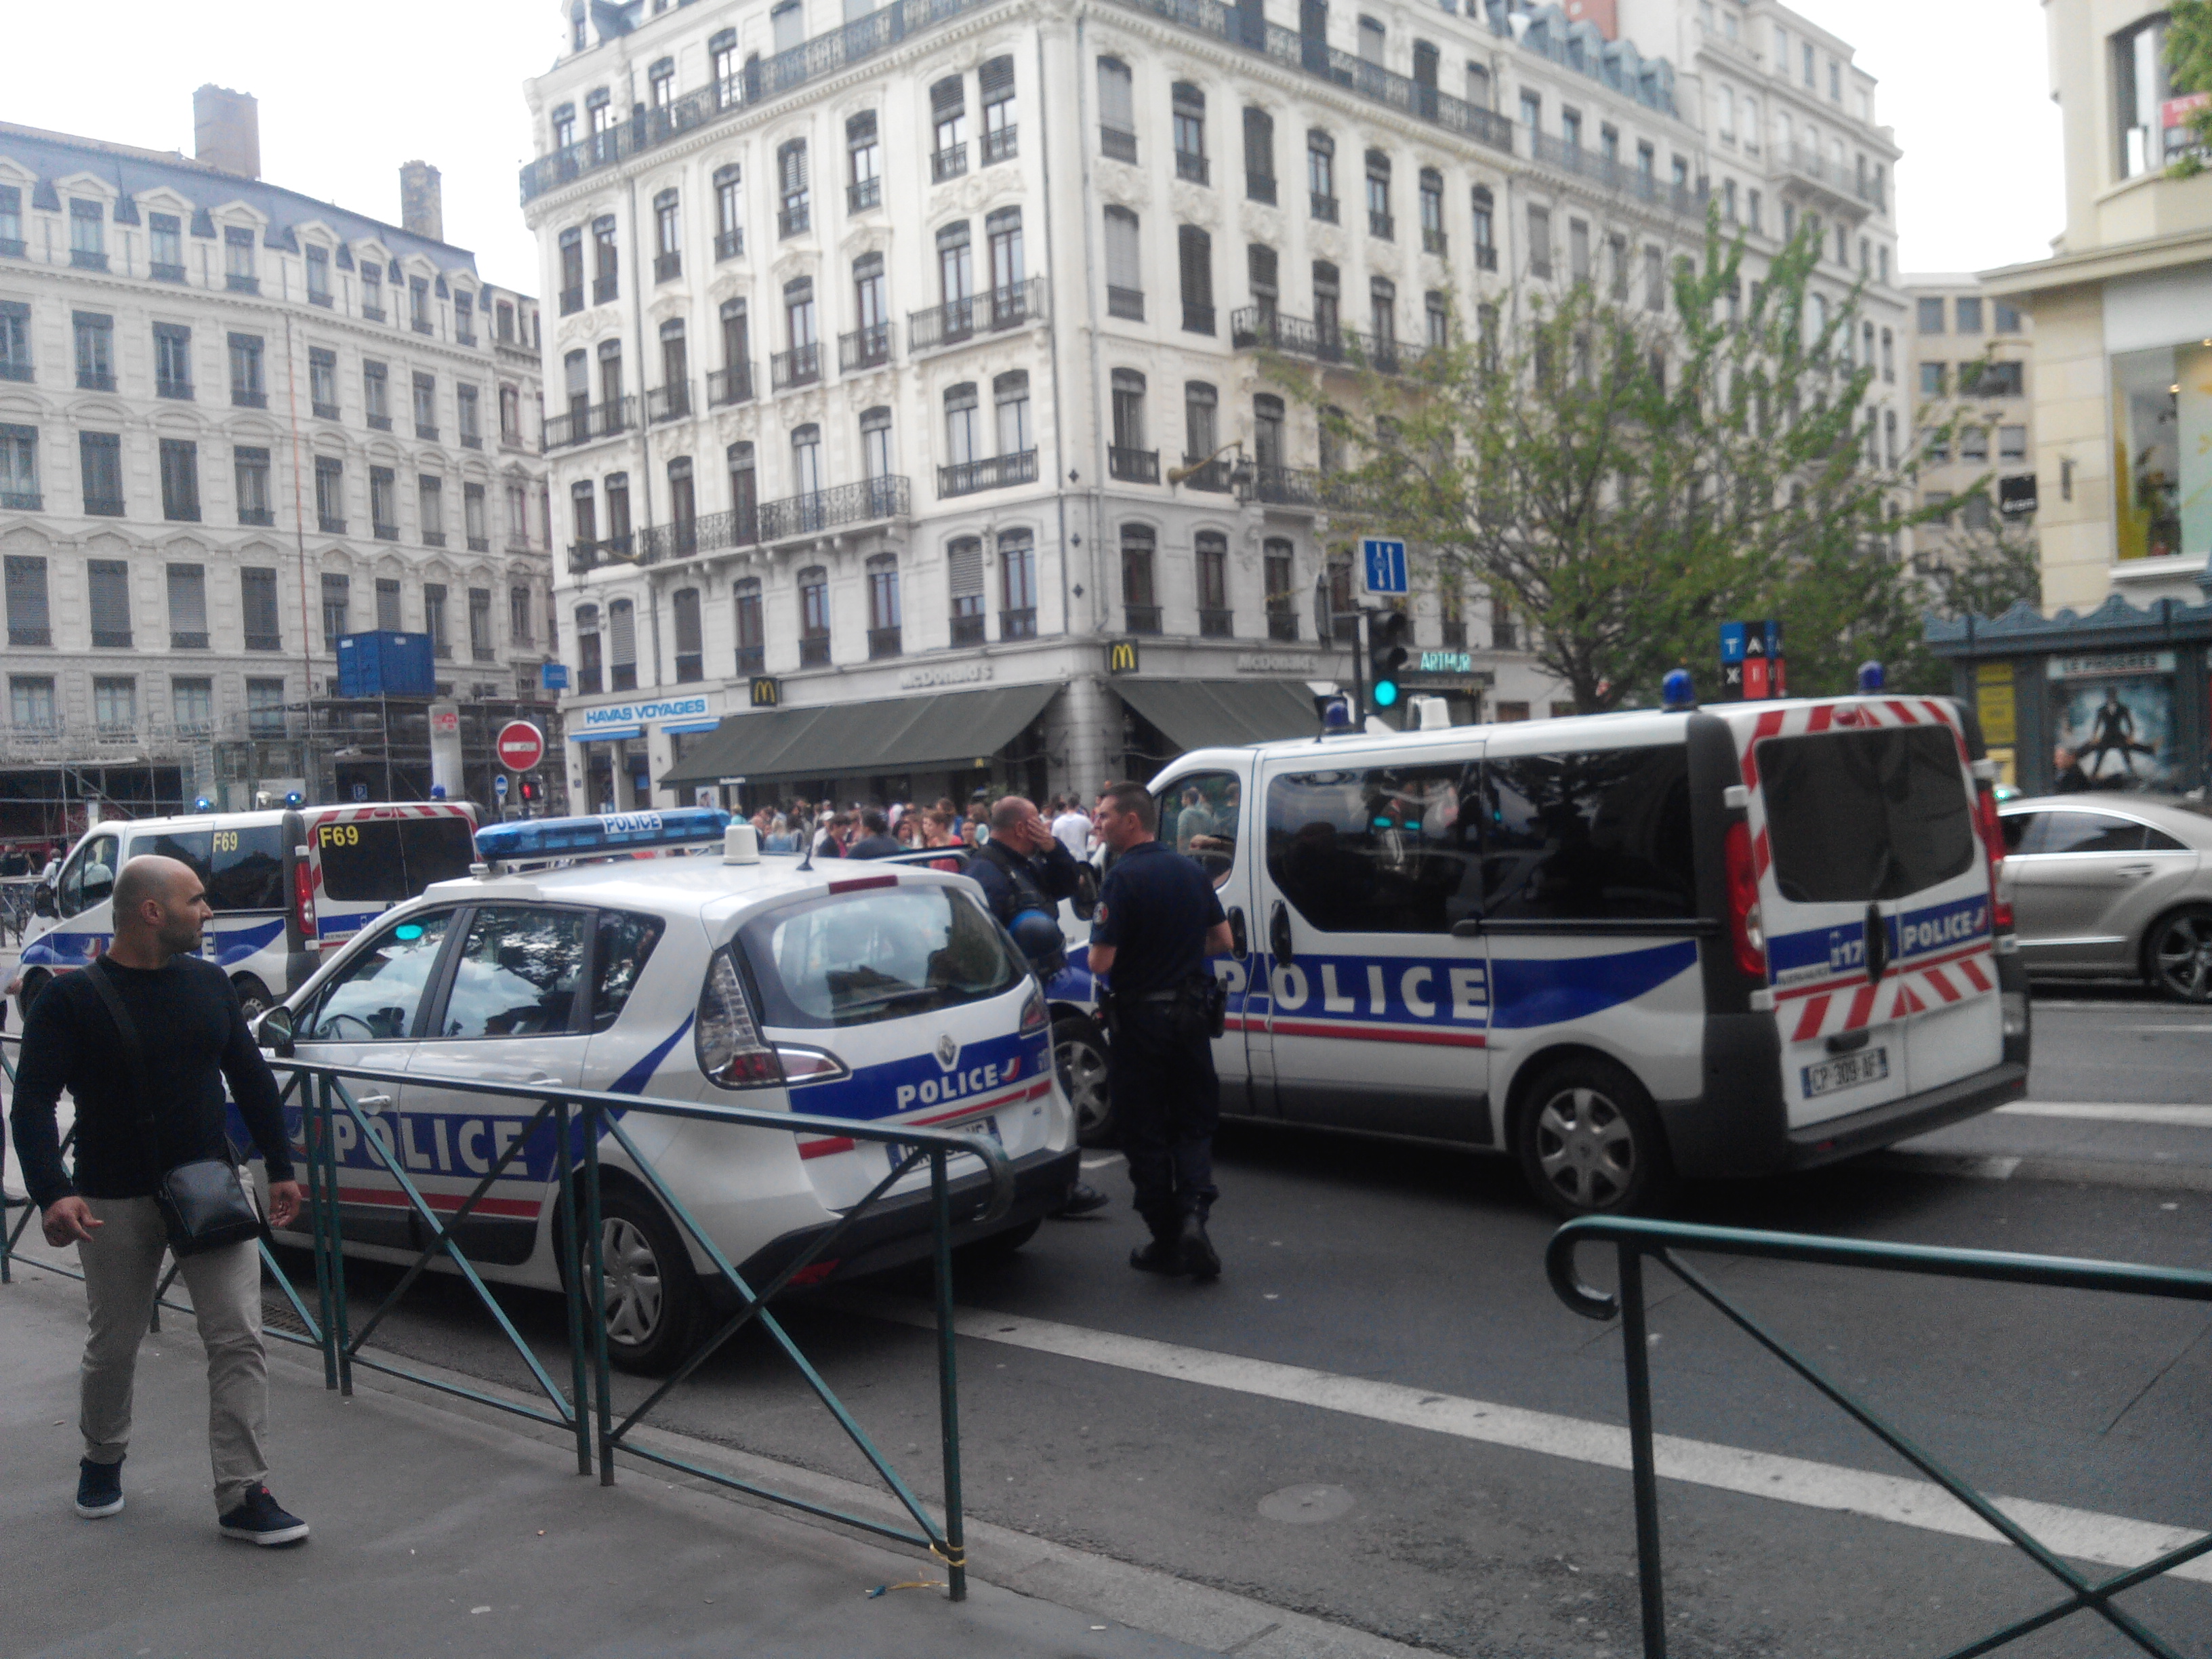 Policiers rue de la Barre vers l'angle avec la place Bellecour. Il y avait des véhicules jusque un peu au delà de la rue des Marronniers.